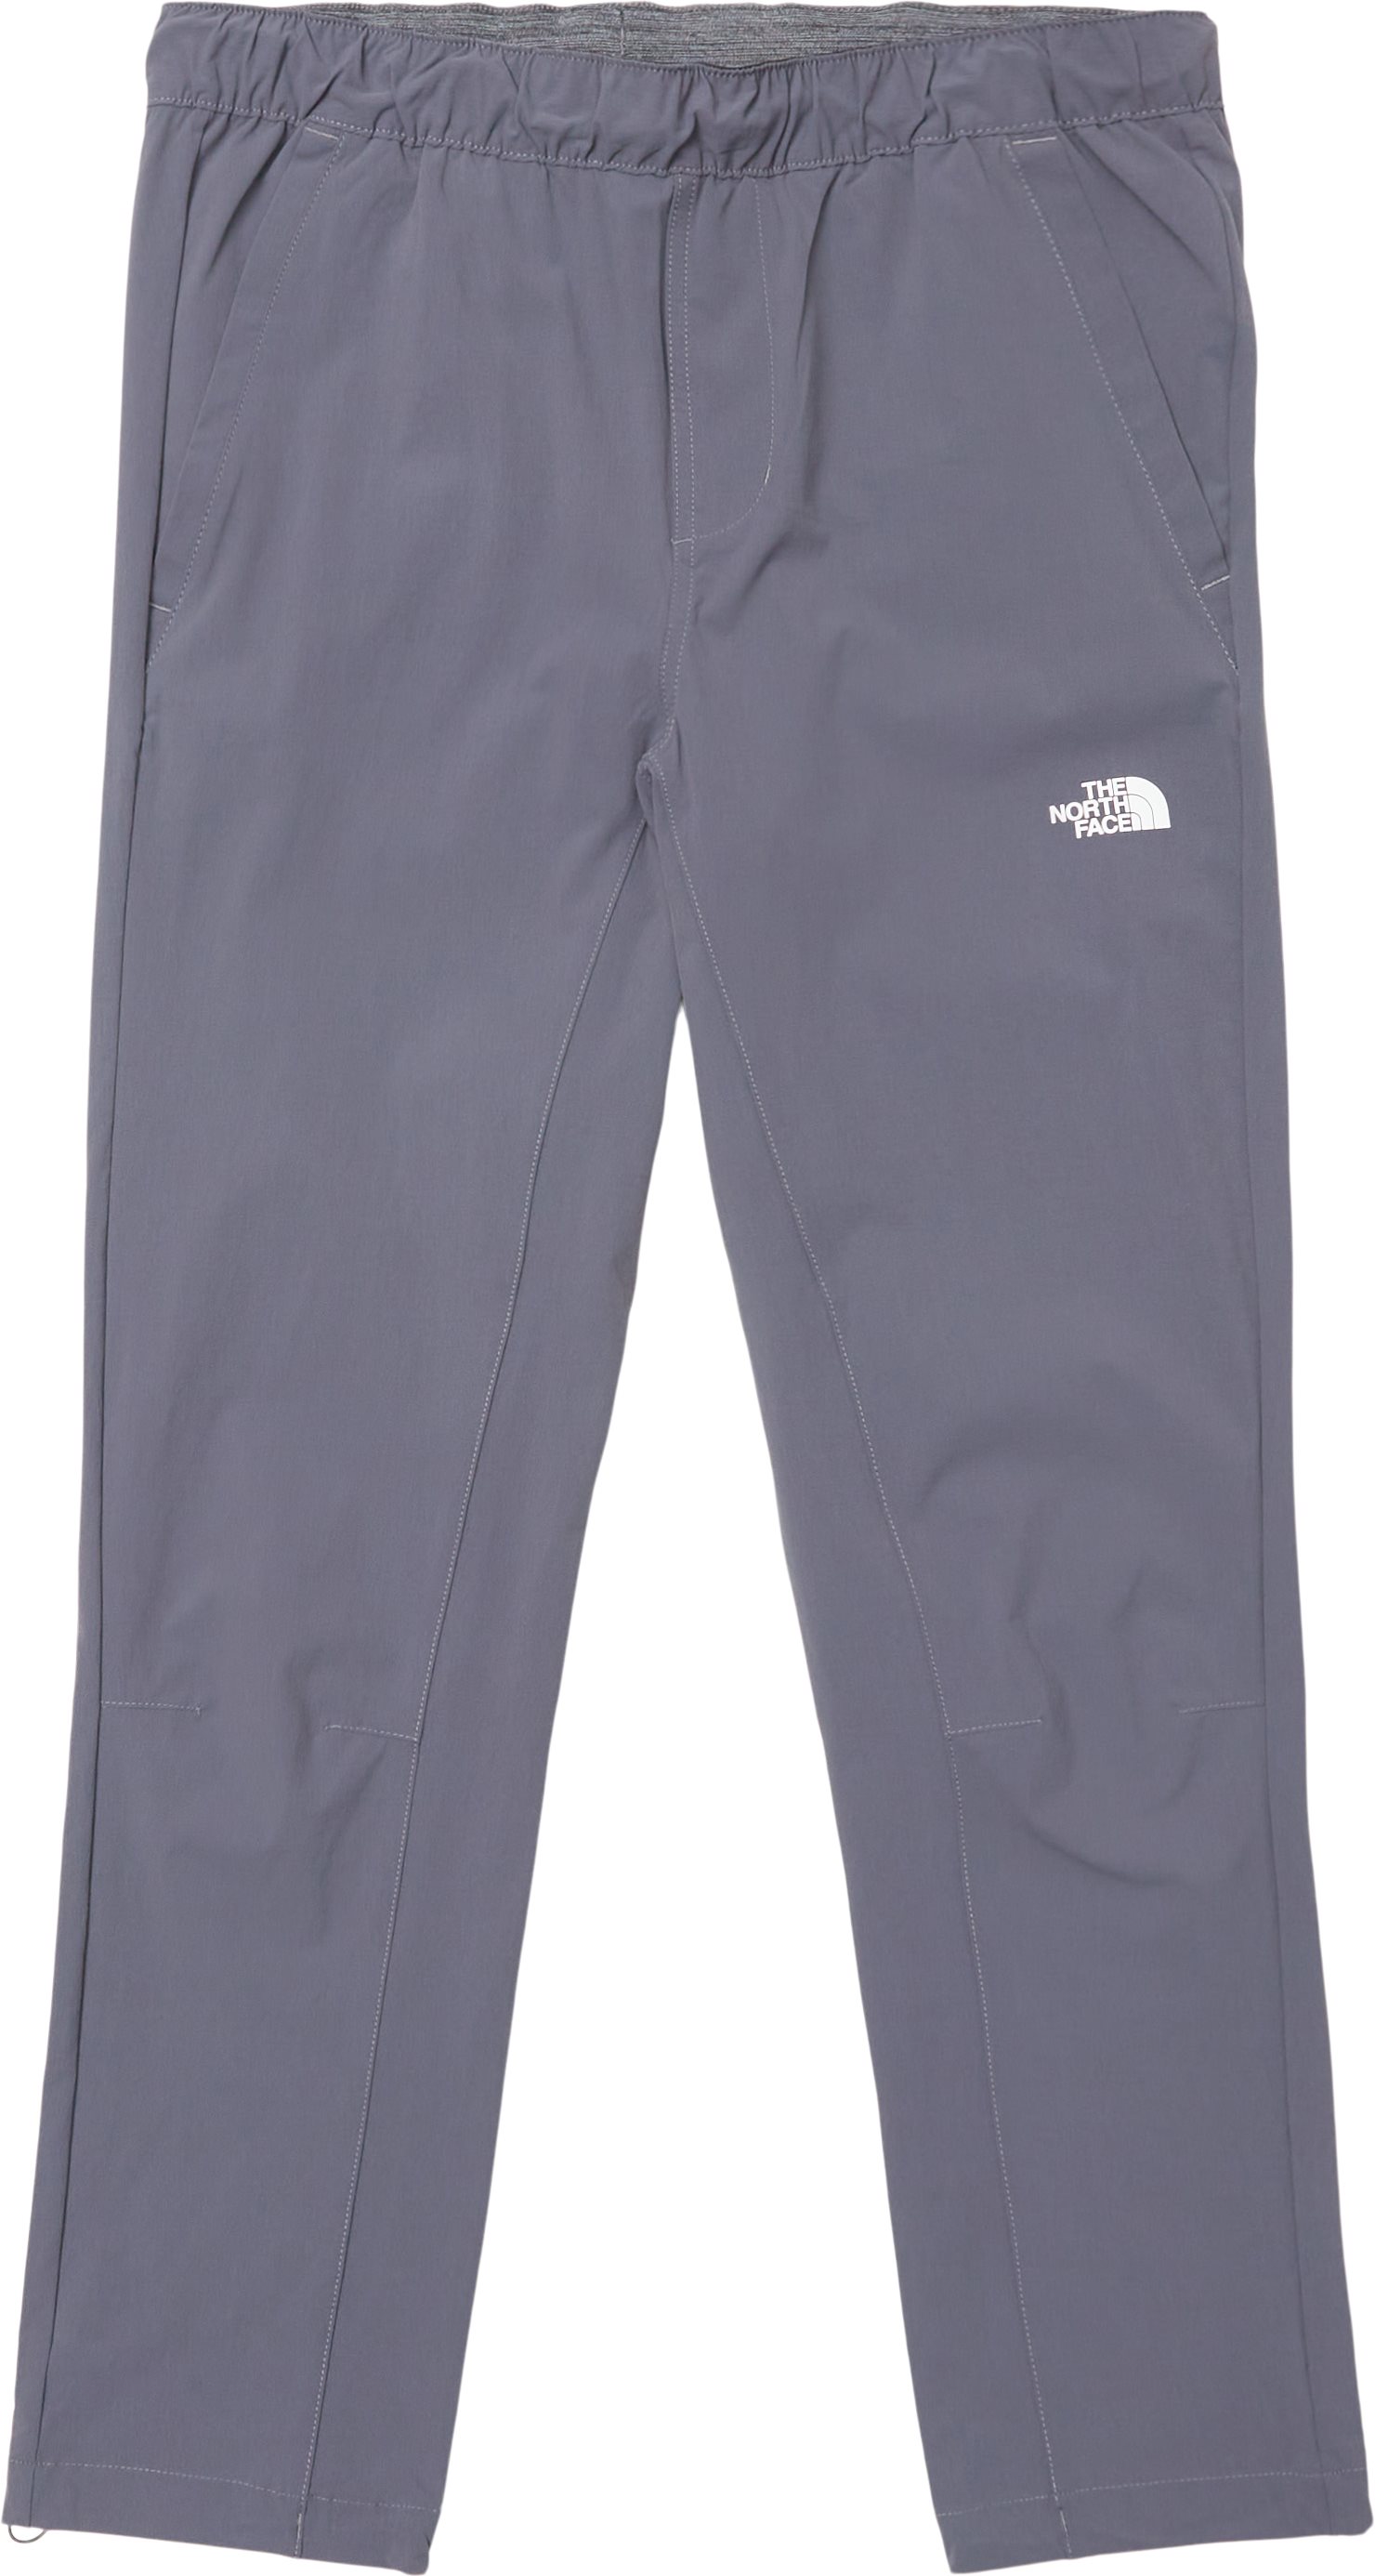 Tech Woven Bukser - Trousers - Regular fit - Grey